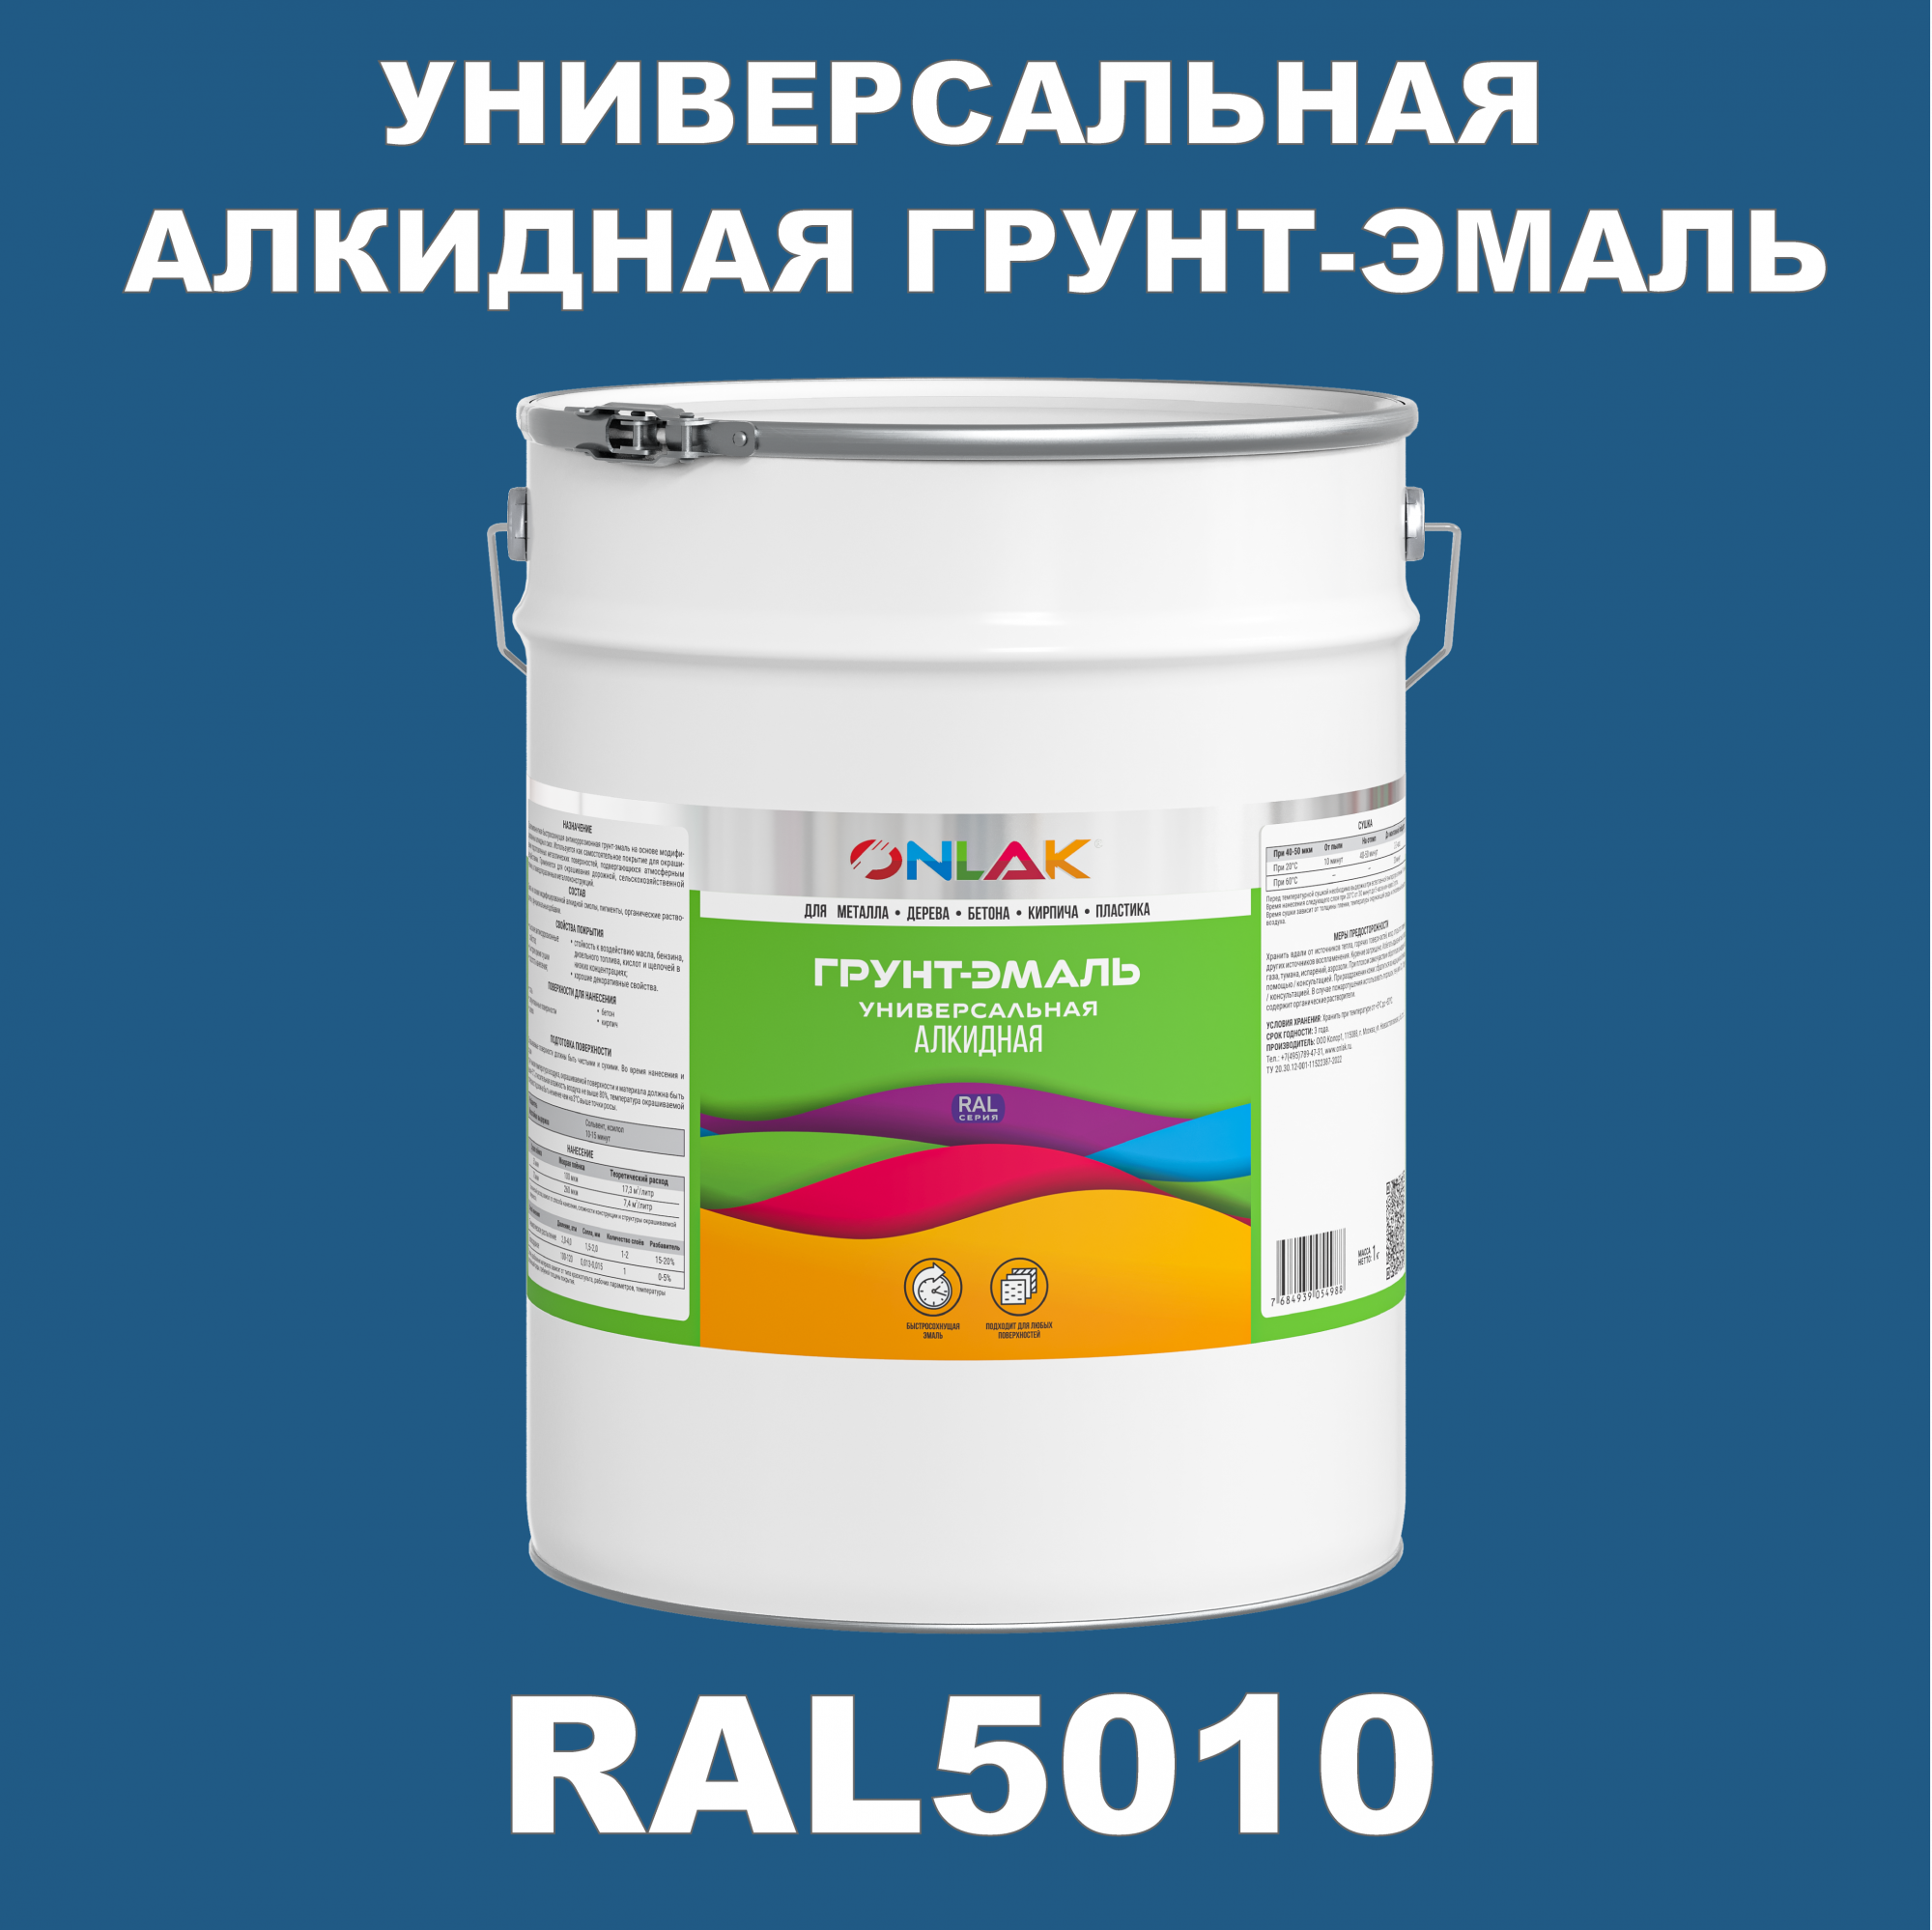 Грунт-эмаль ONLAK 1К RAL5010 антикоррозионная алкидная по металлу по ржавчине 20 кг грунт эмаль yollo по ржавчине алкидная серая 0 9 кг